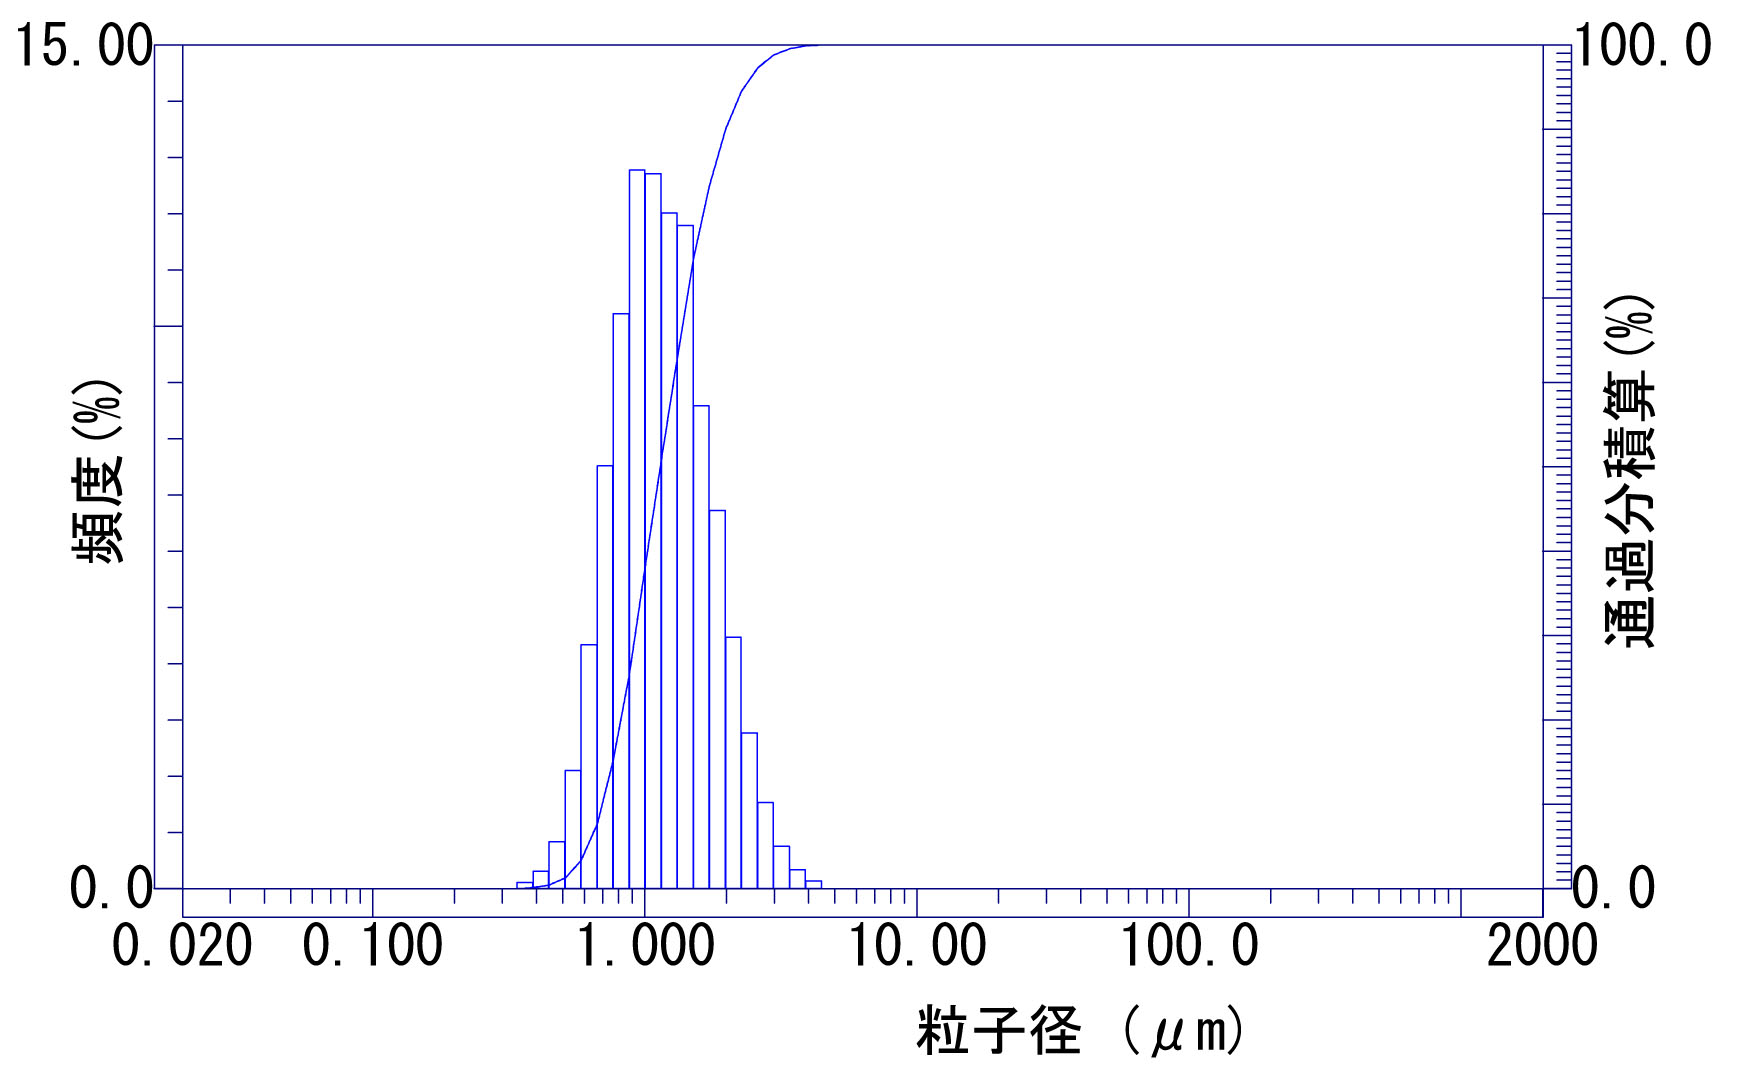 レーザー回折式粒度分布計 - 1成分試料